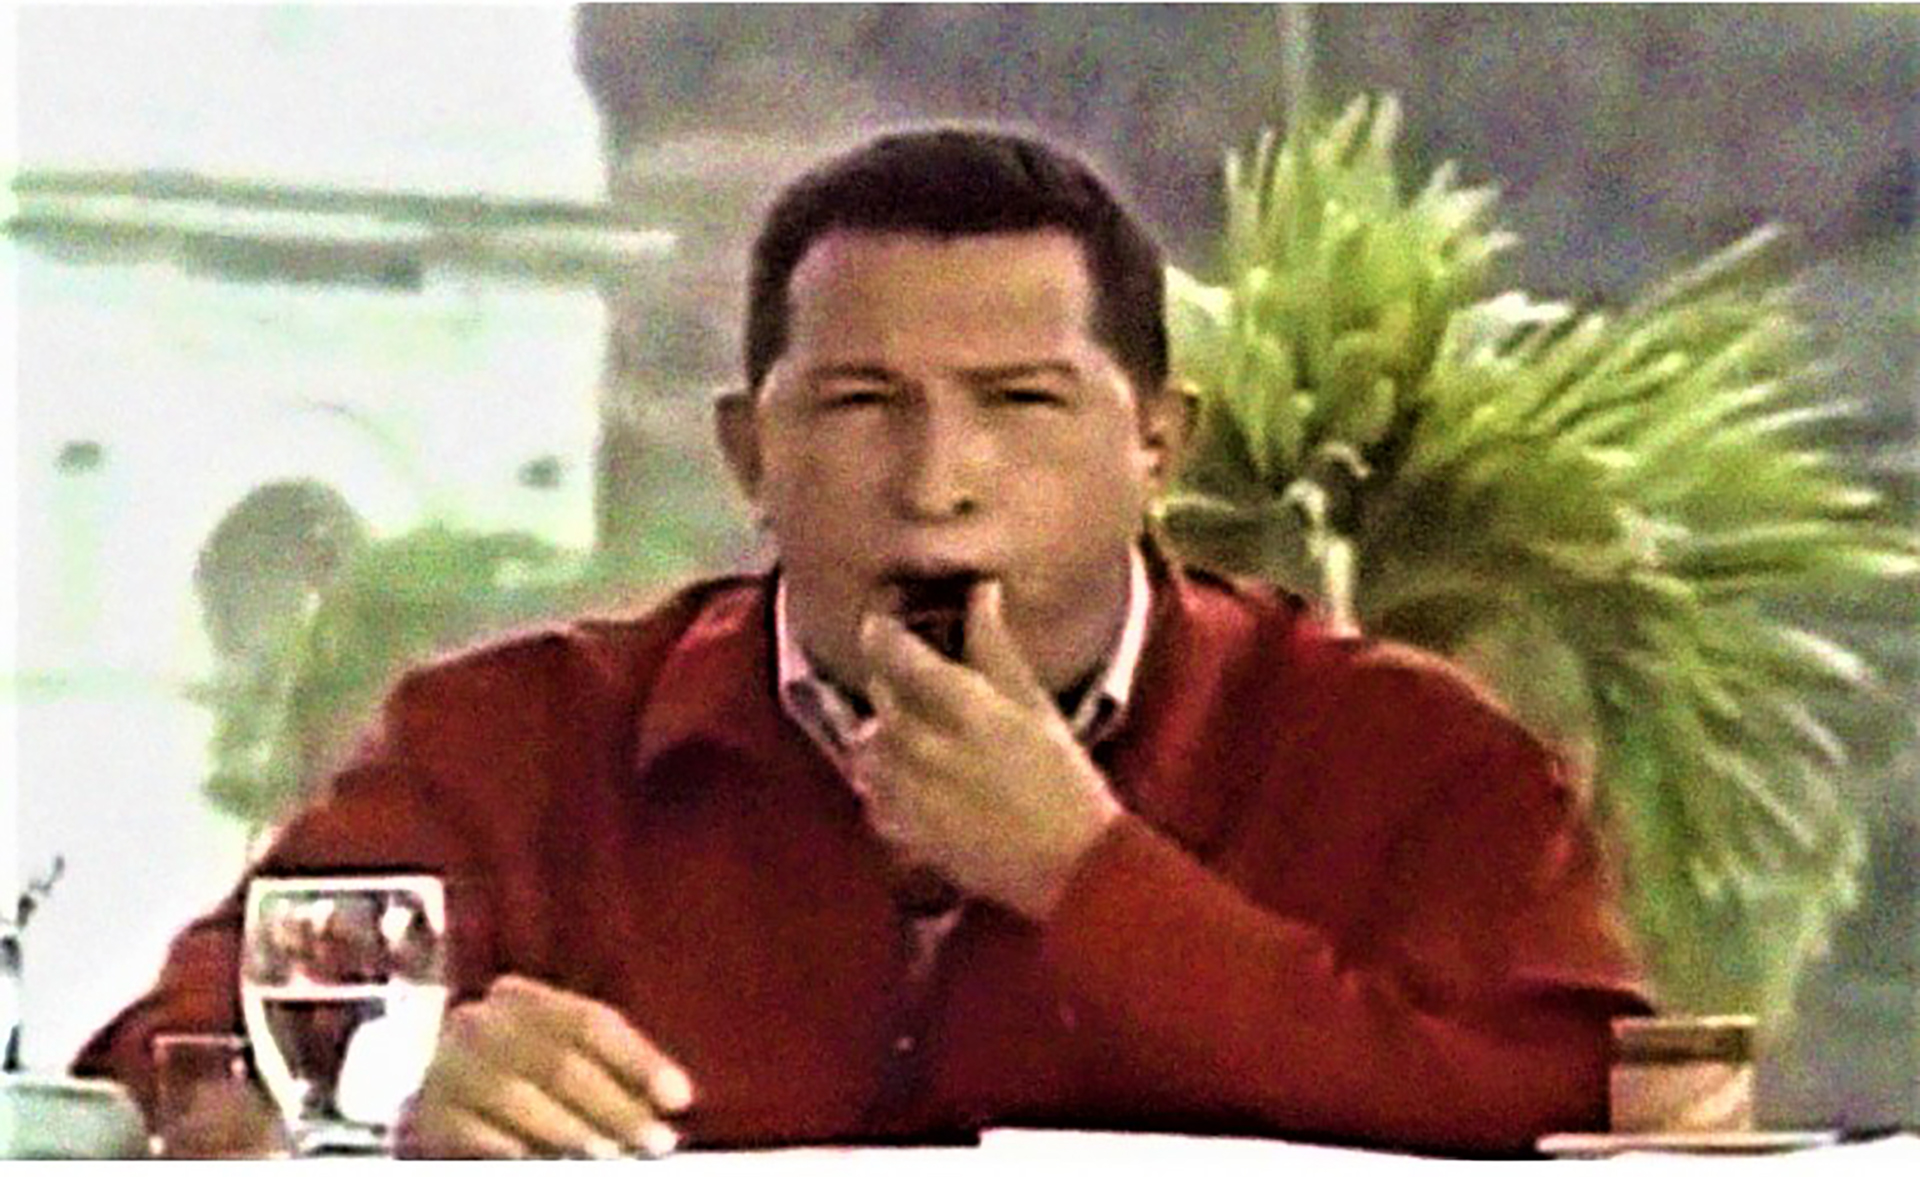 Hugo Chávez, con el silbido de un pito, despidió a 20 empleados de Pdvsa, en el año 2002